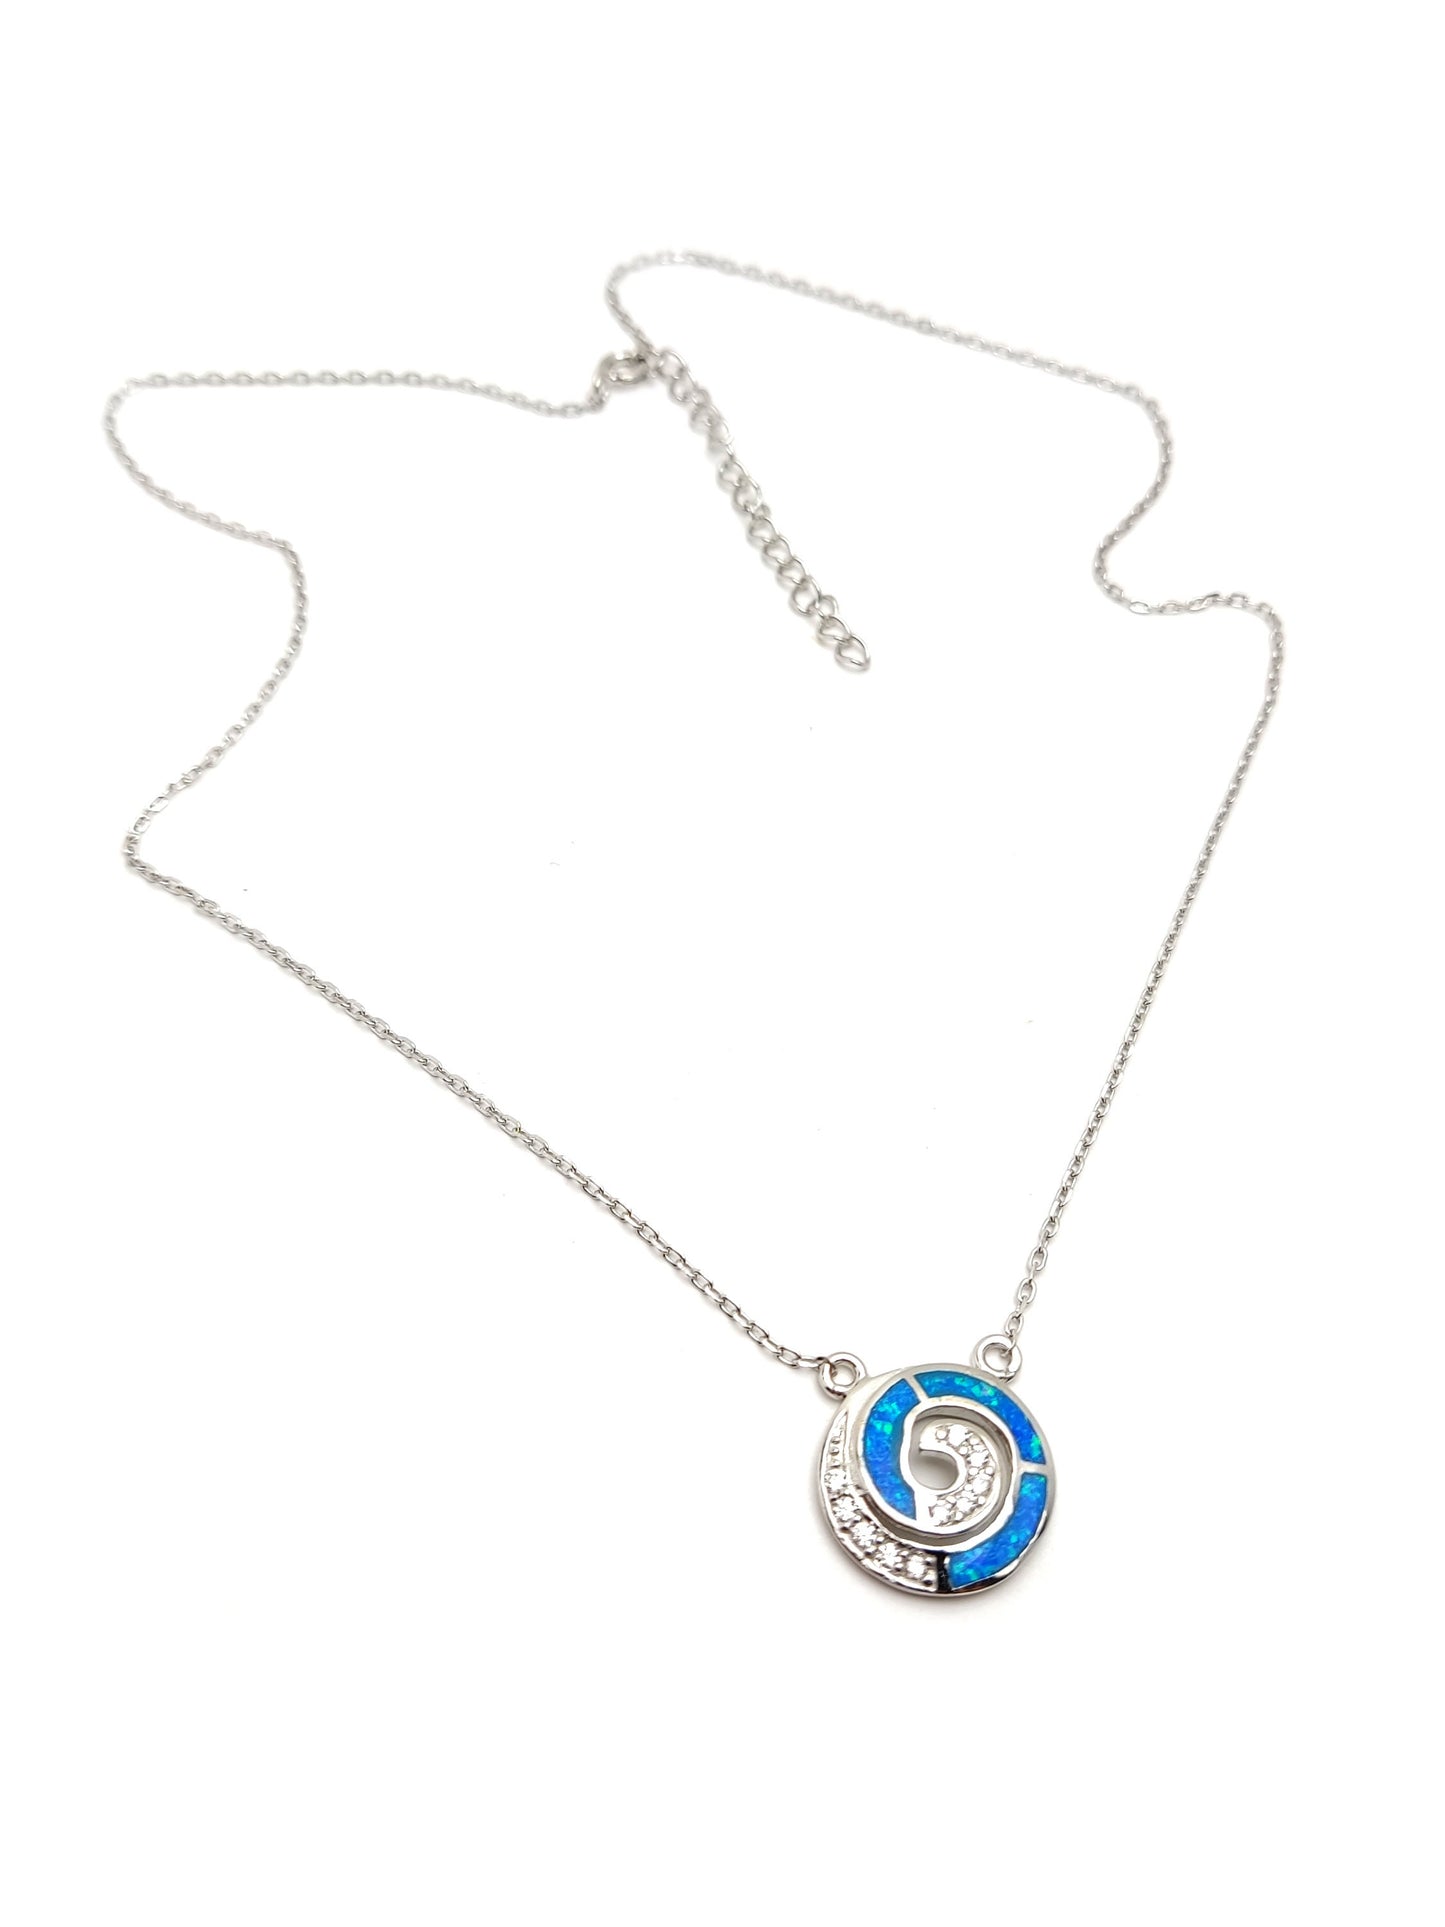 Griechische Silberkette, Circle Of Life Infinity Spiral Design Ocean Blue Opal Chain Pendant, Jewelry From Greece, Griechischer Silber Schmuck